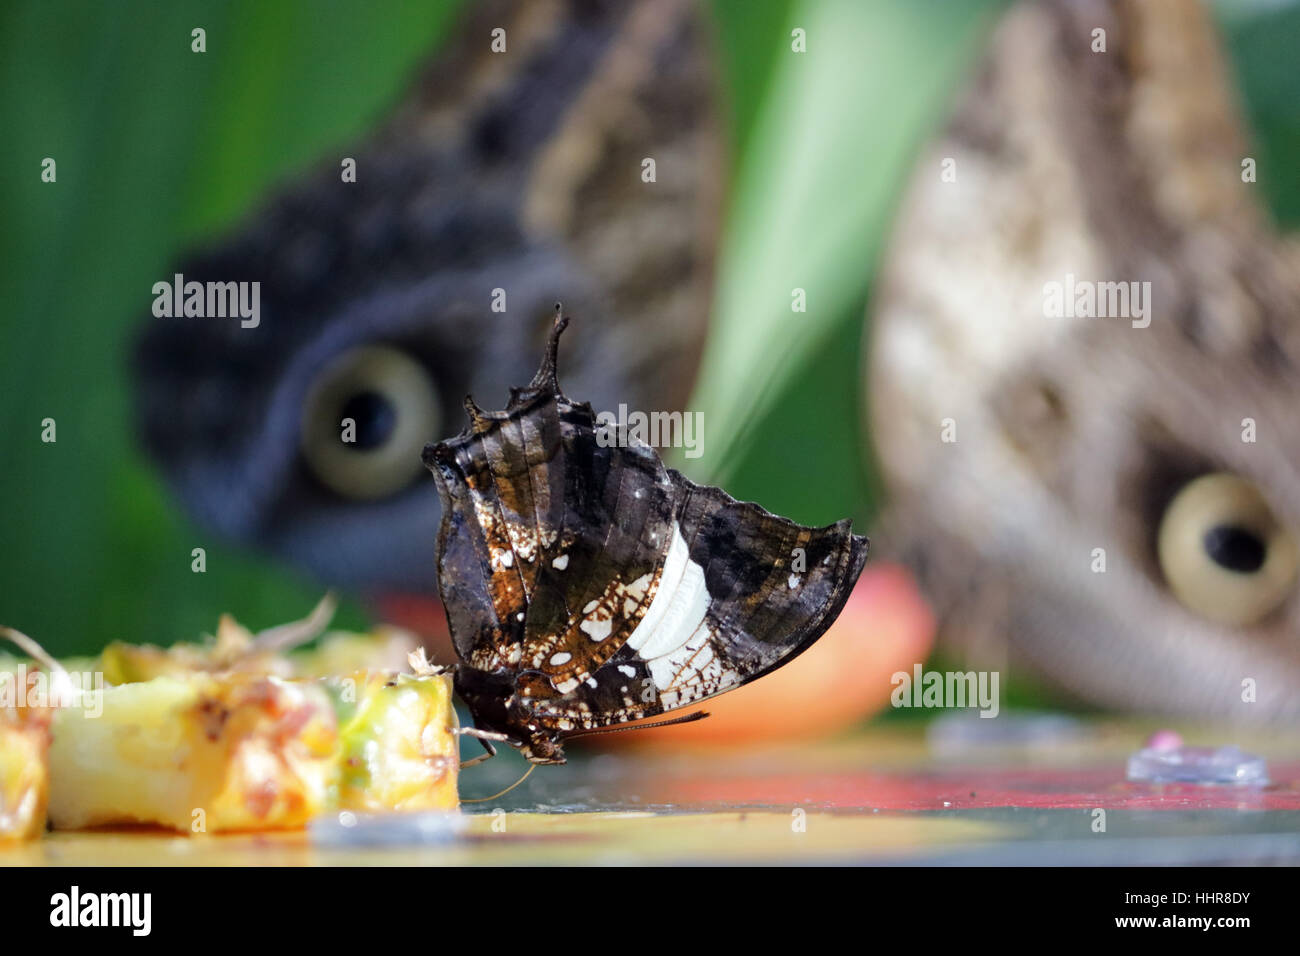 Wisley, Surrey, Reino Unido. El 20 de enero de 2017. mariposa con las alas cerradas se alimenta de frutos con la mira en los ojos de dos mariposas búho detrás, en el calor del invernadero tropical en Wisley Gardens en Surrey. Foto de stock